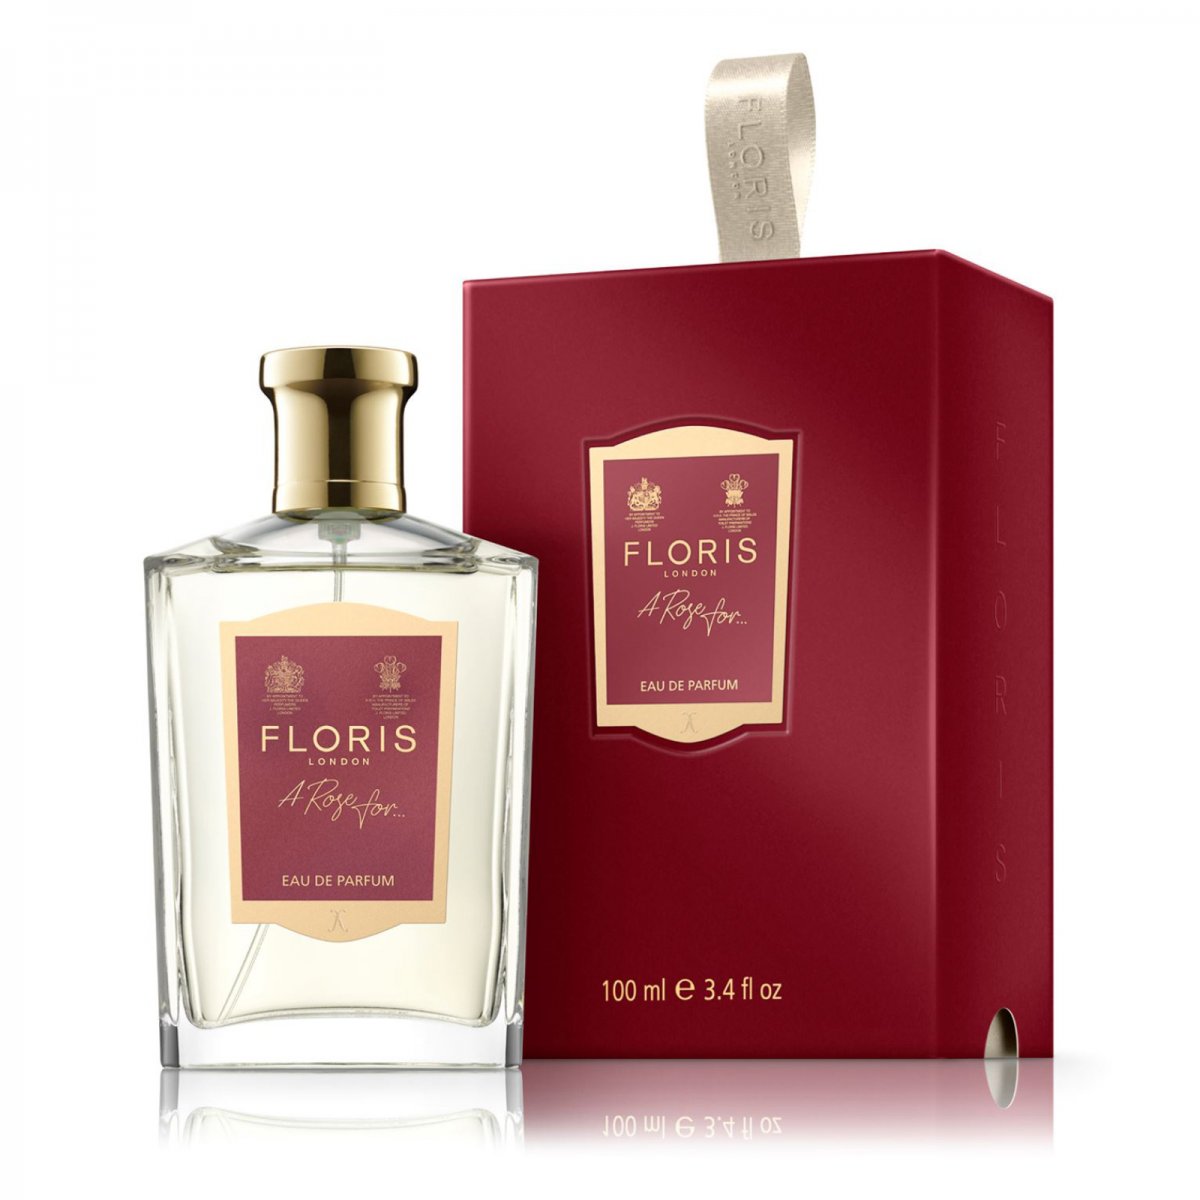 Floris A Rose For.. Eau de Parfum (100 ml) von Floris